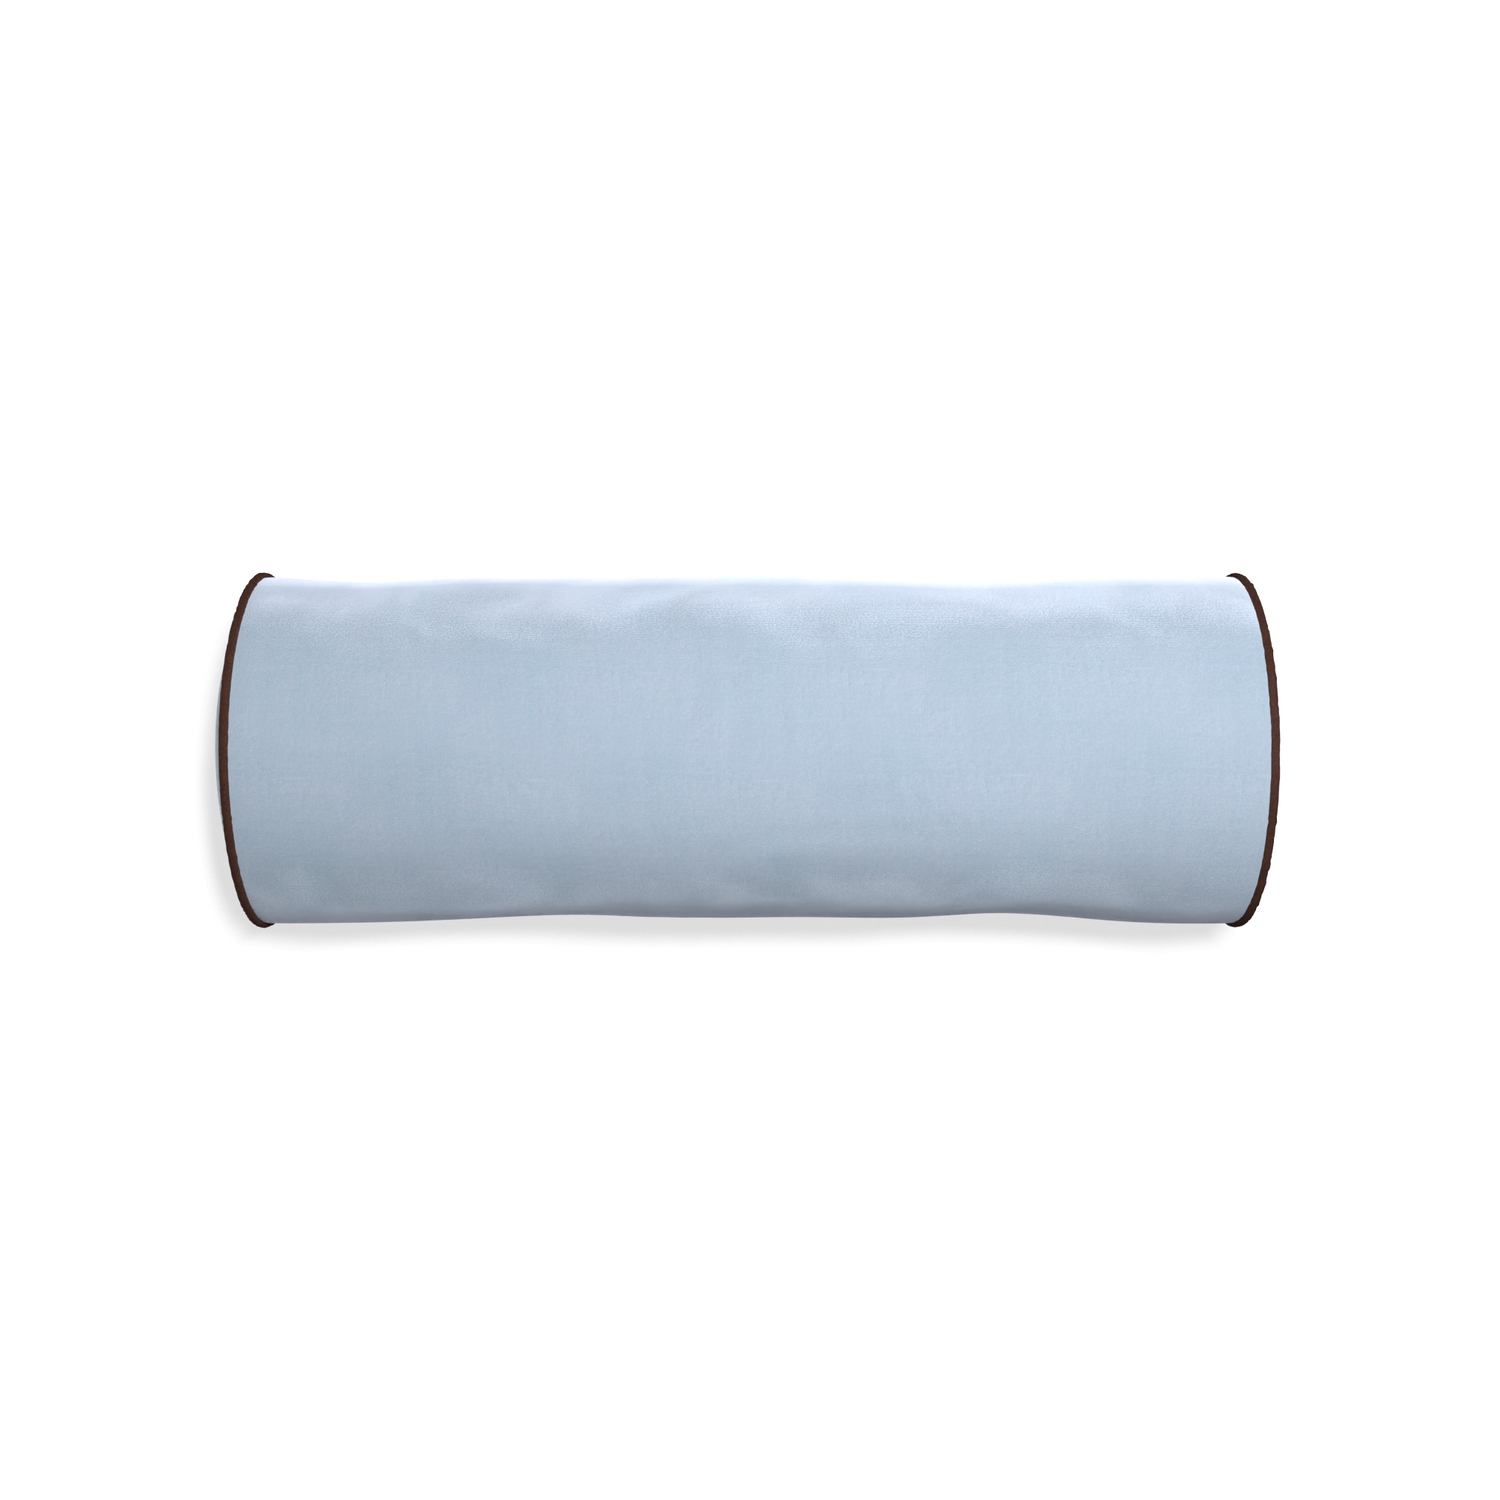 Bolster sky velvet custom pillow with w piping on white background